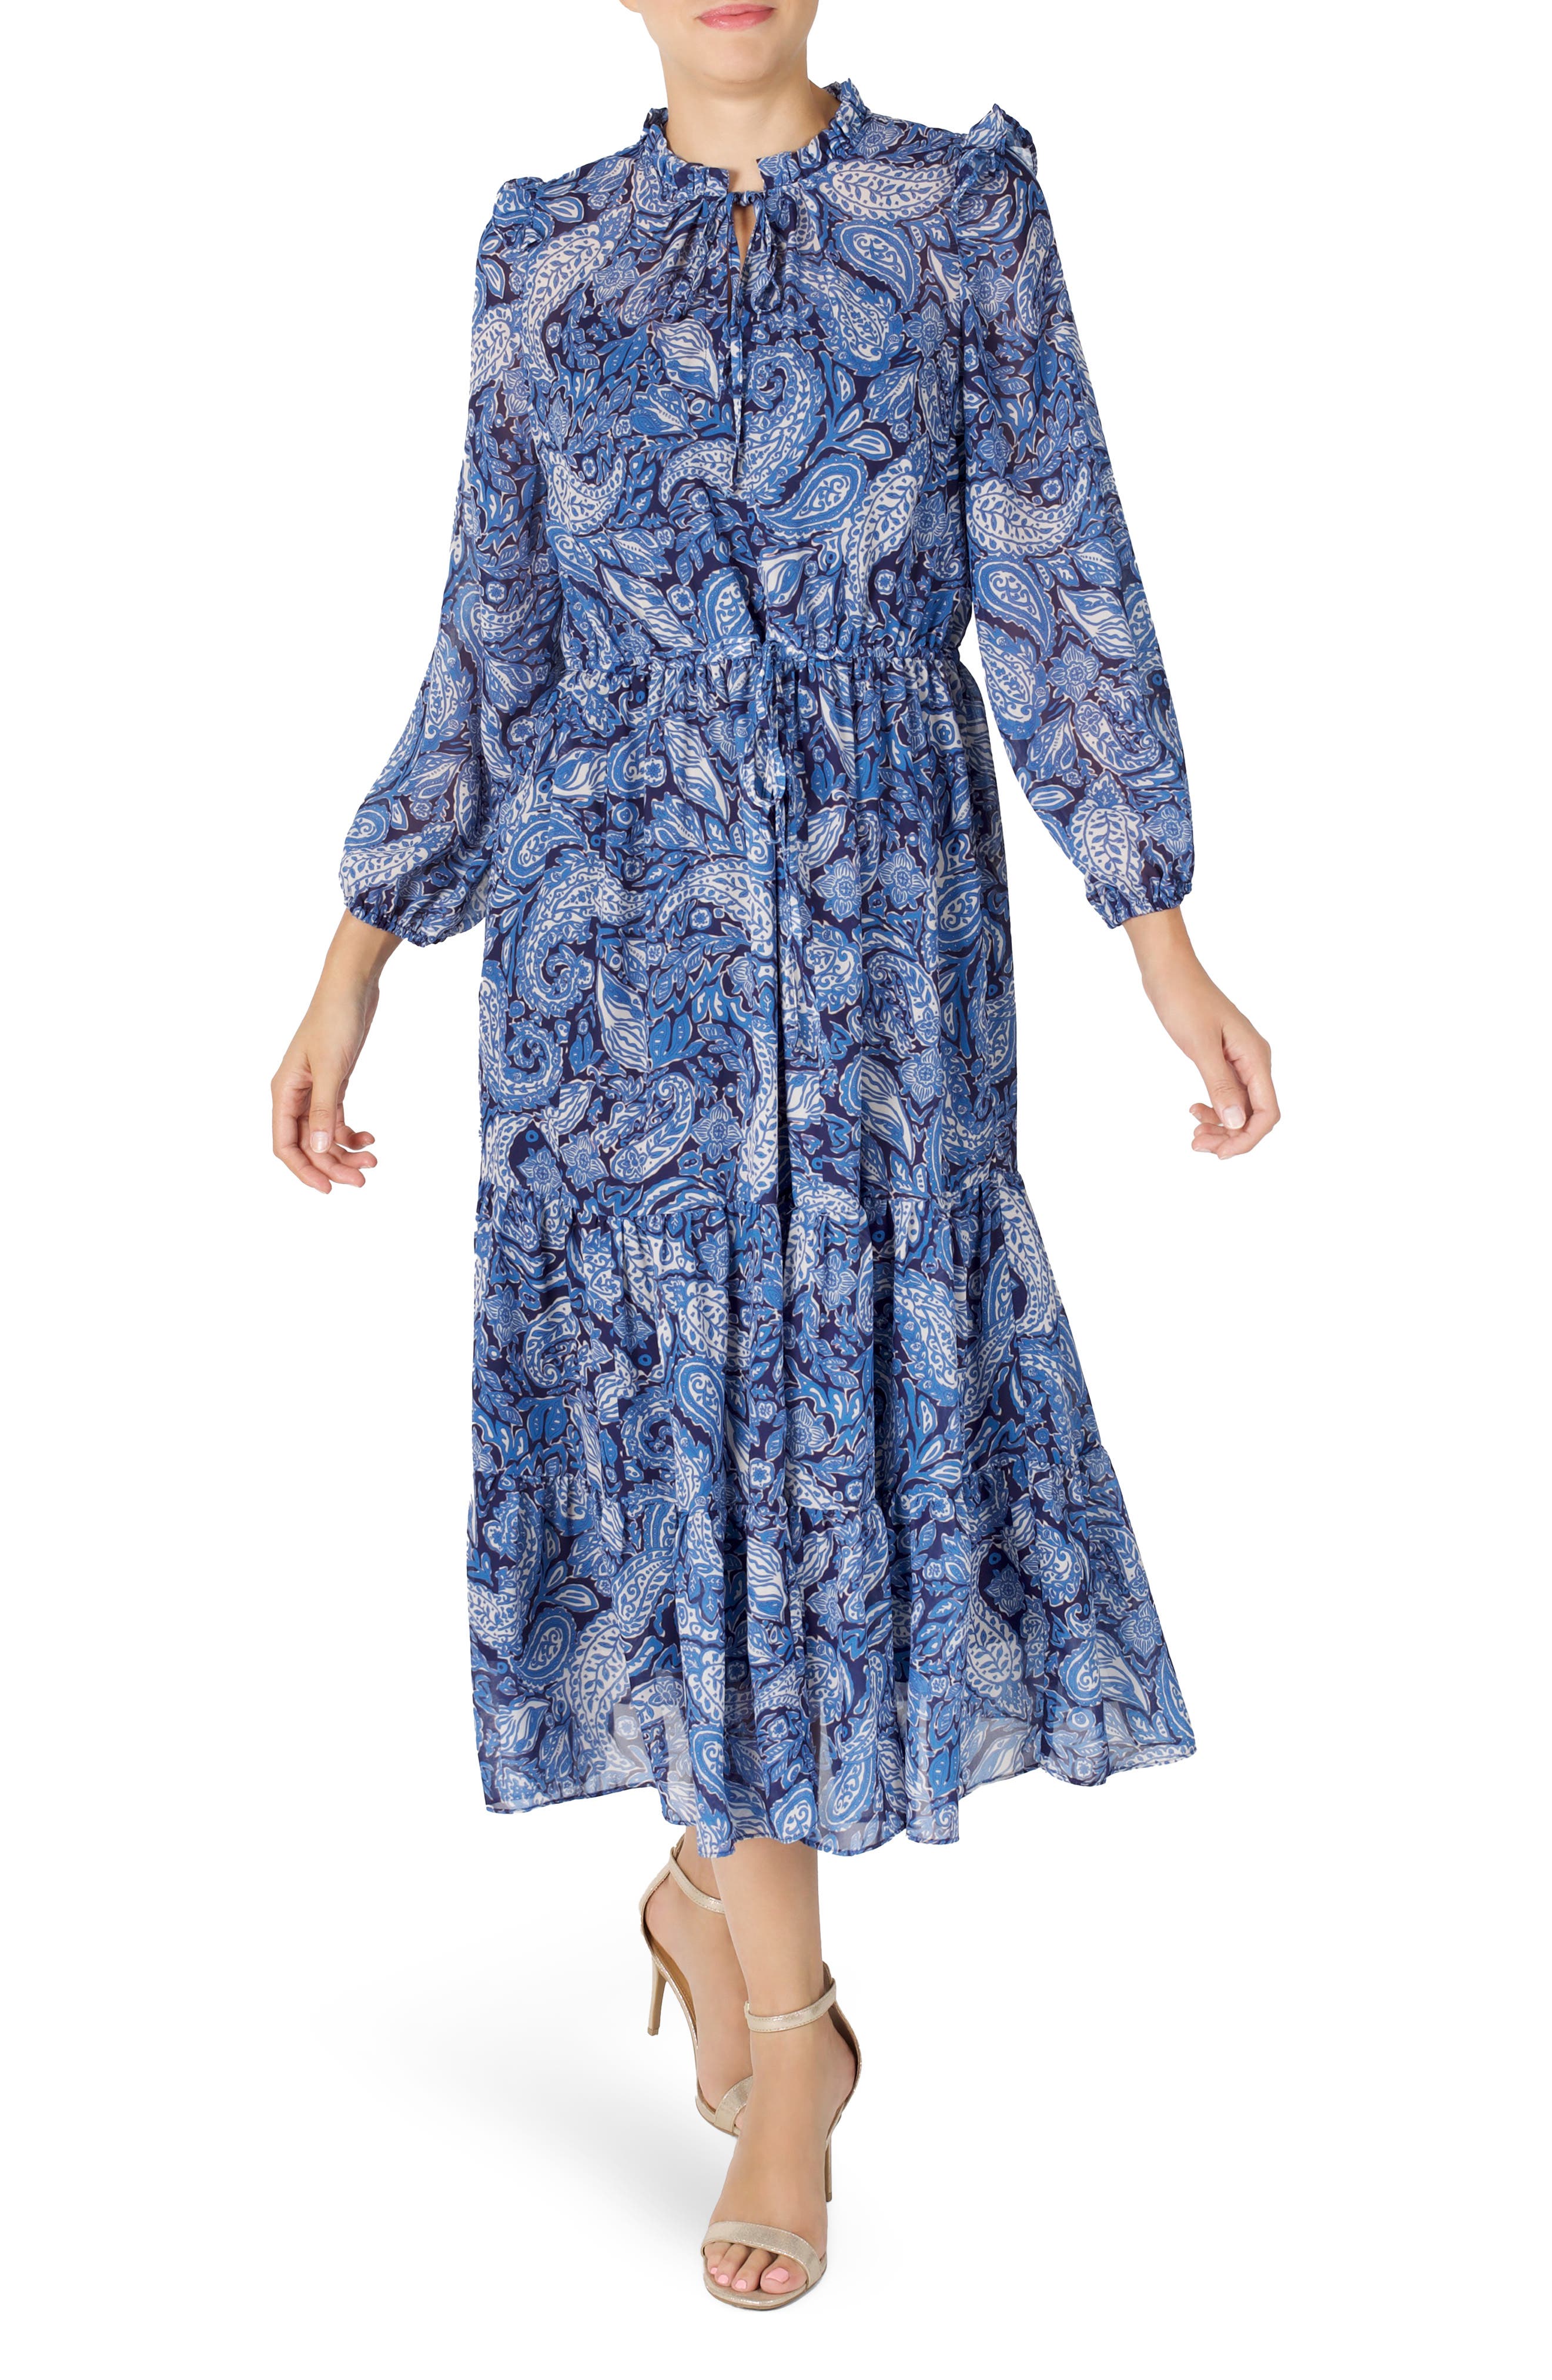 JULIA JORDAN Dresses for Women | ModeSens